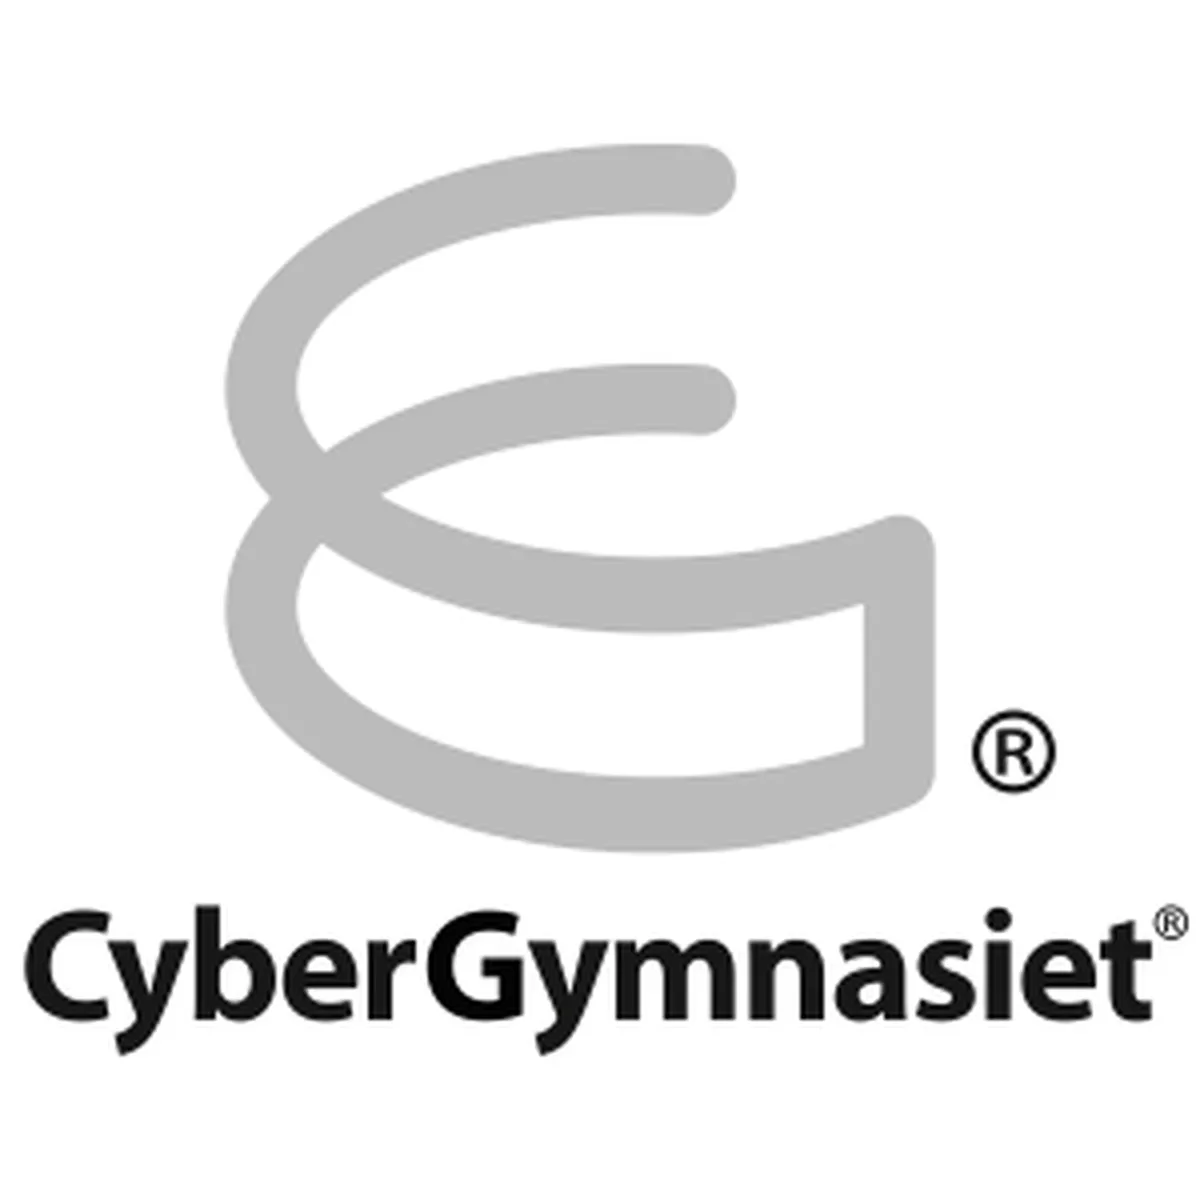 CyberGymnasiet Malmö